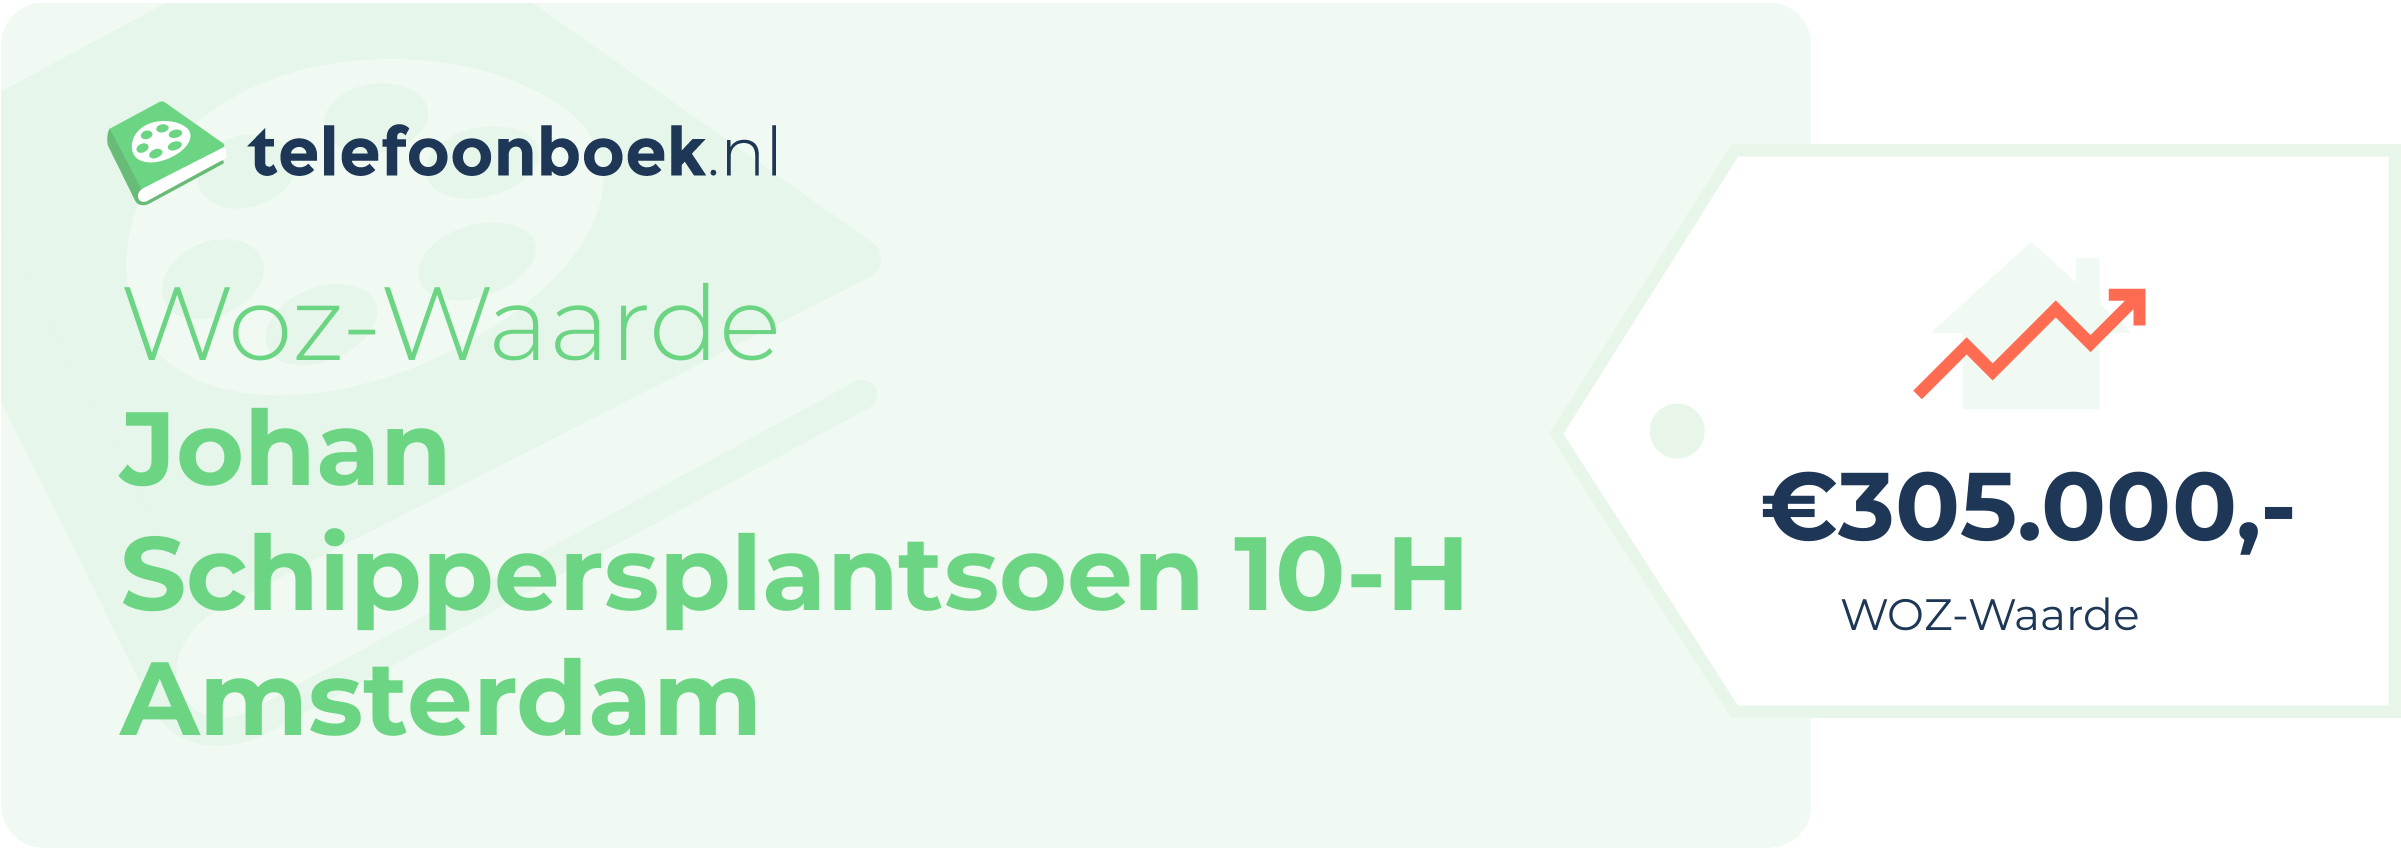 WOZ-waarde Johan Schippersplantsoen 10-H Amsterdam